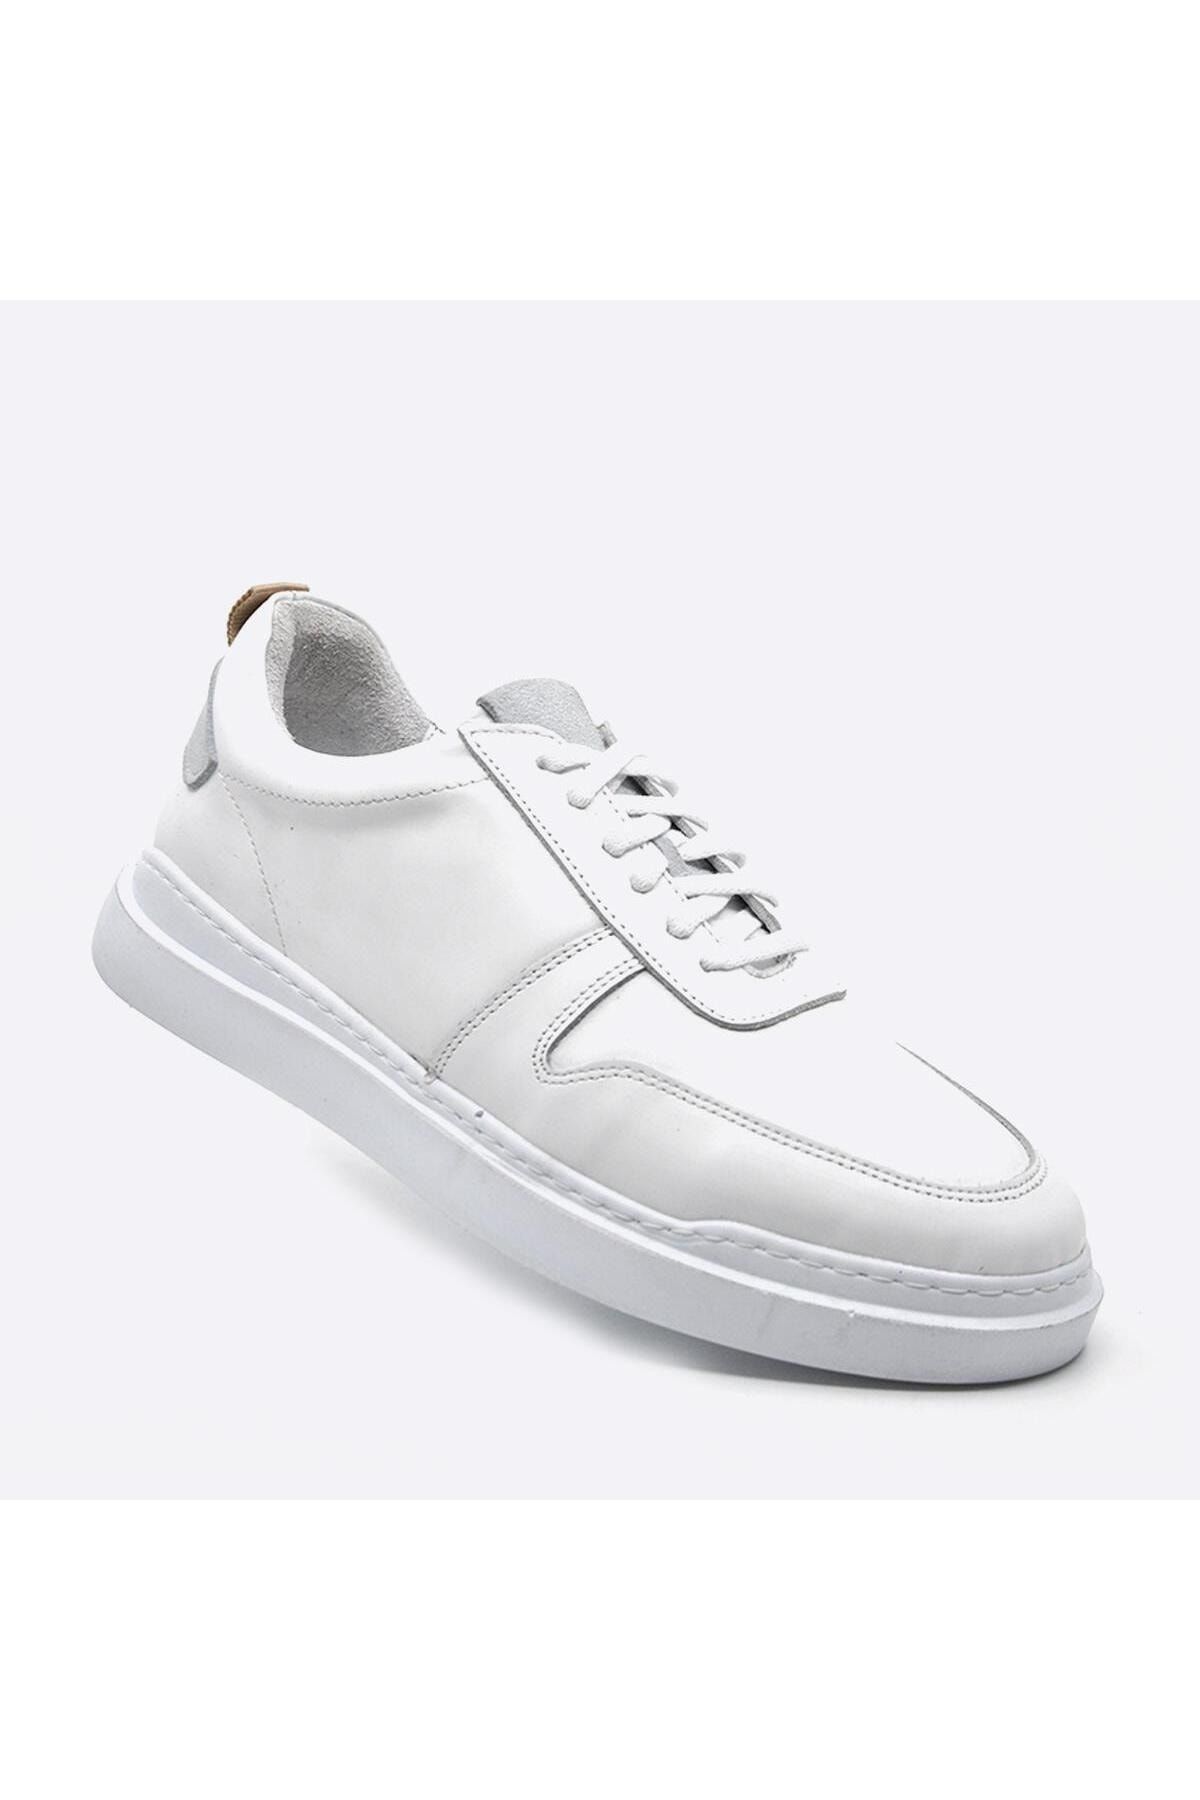 Fosco Hakiki Deri Sneakers Beyaz Erkek Ayakkabı 9889